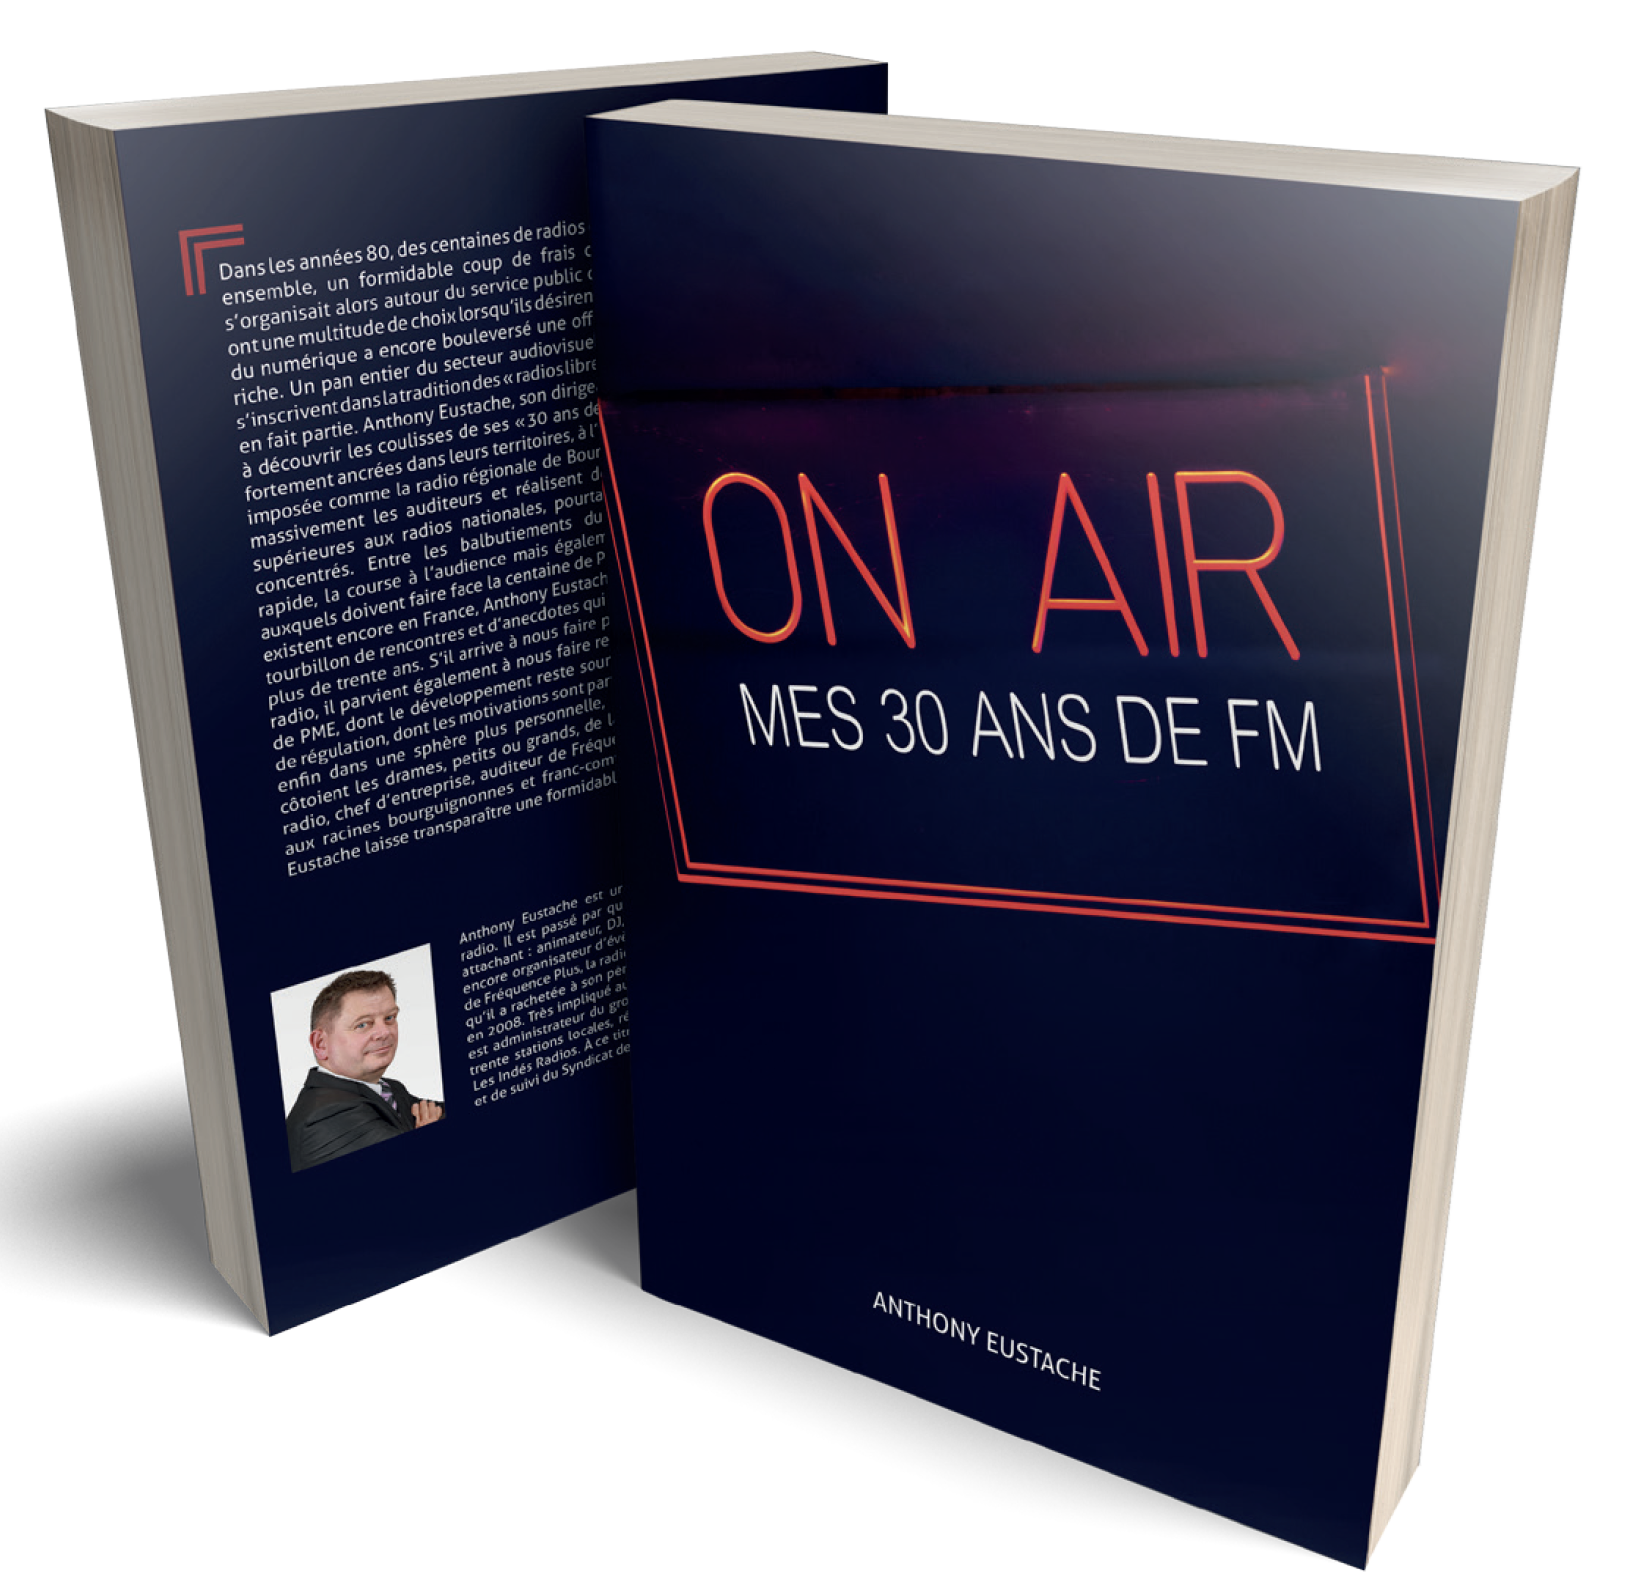 Salon de la Radio : Anthony Eustache dédicacera son livre